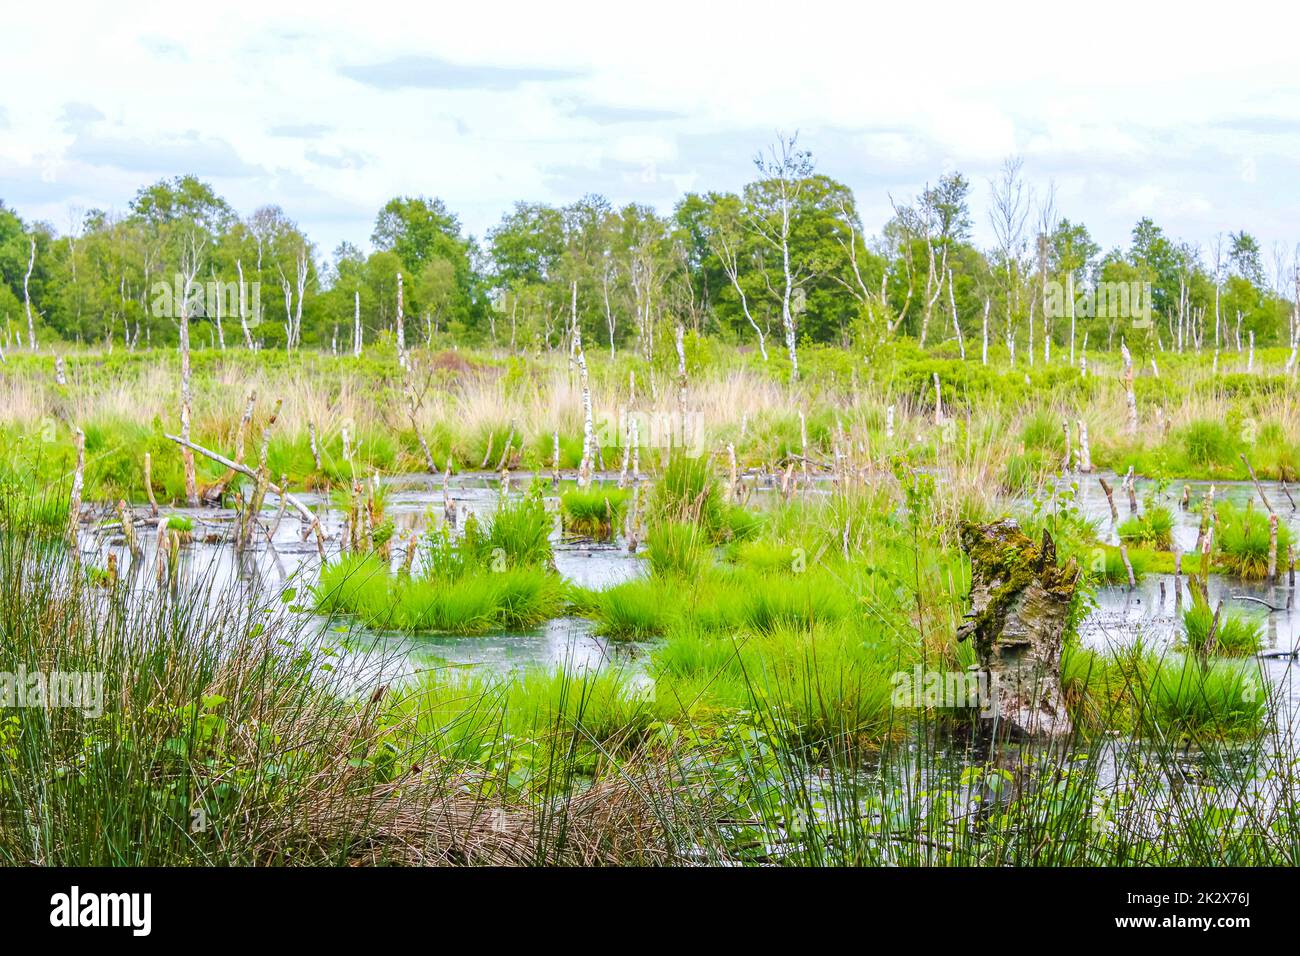 Marais de tourbière étang rivière lac vert plantes forêt Allemagne. Banque D'Images